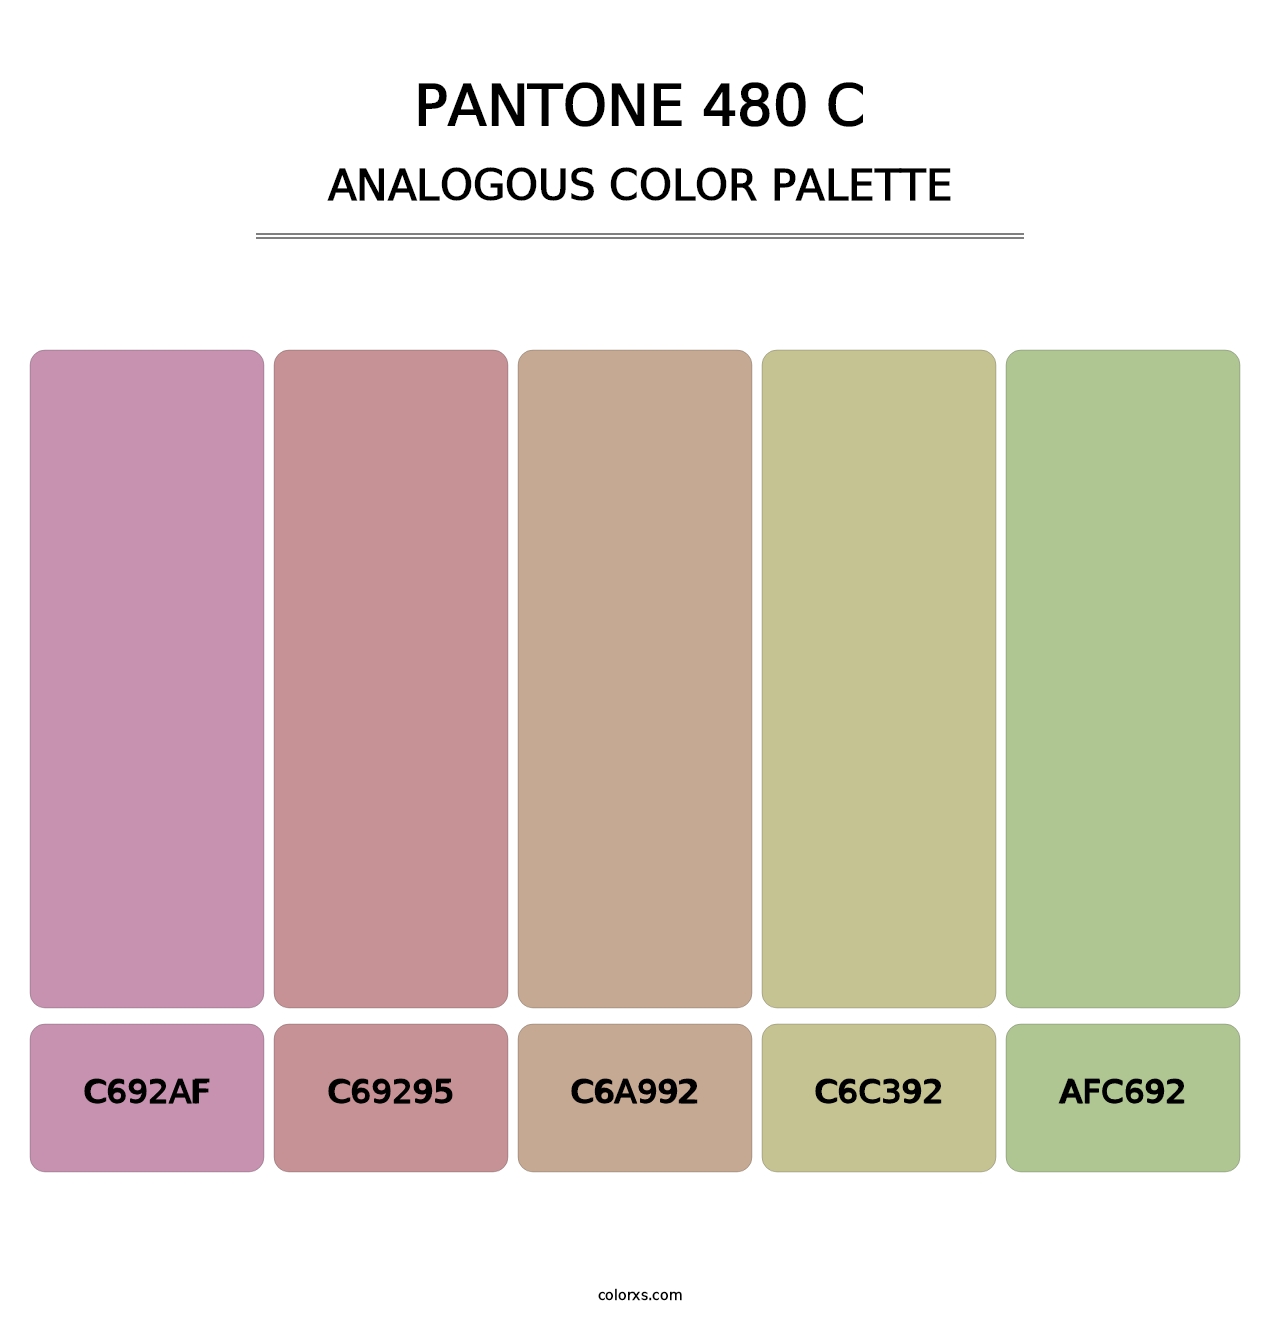 PANTONE 480 C - Analogous Color Palette